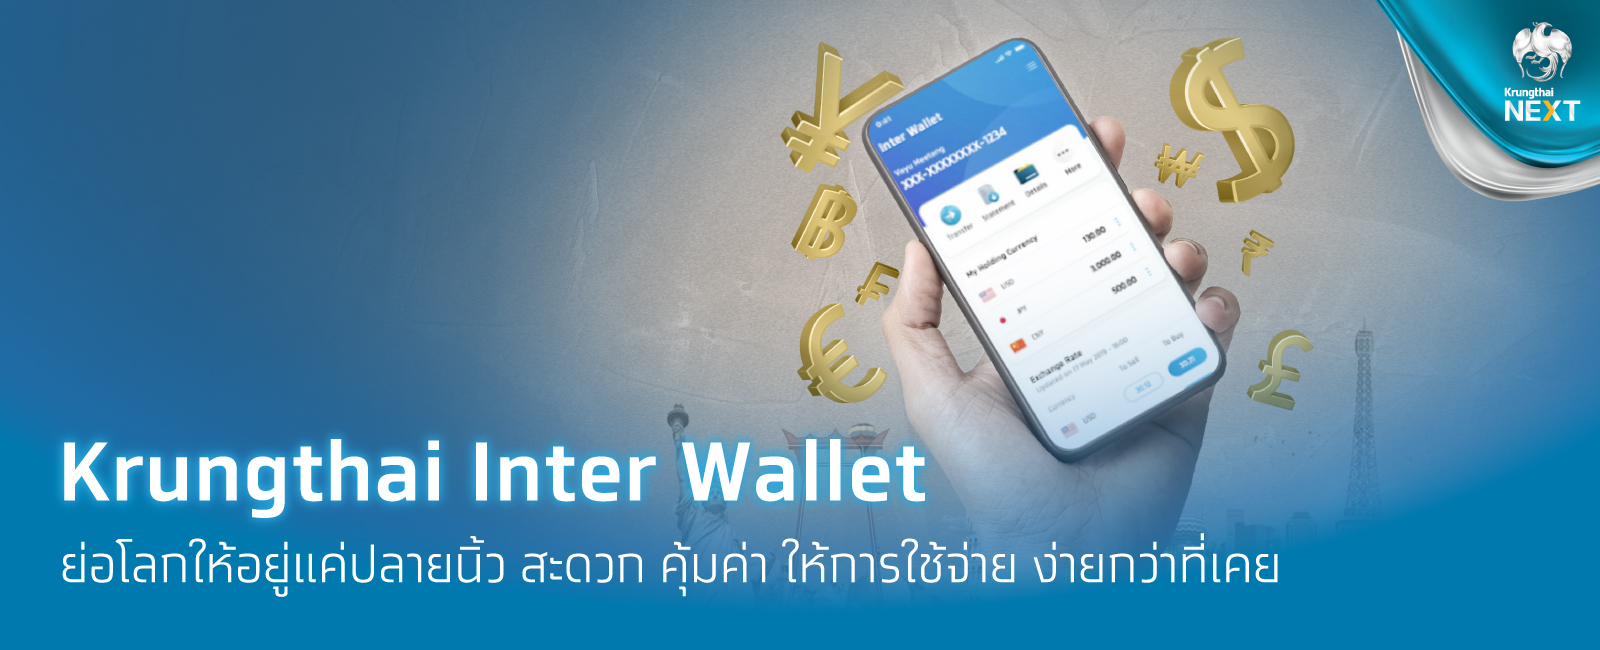 Krungthai Inter Wallet